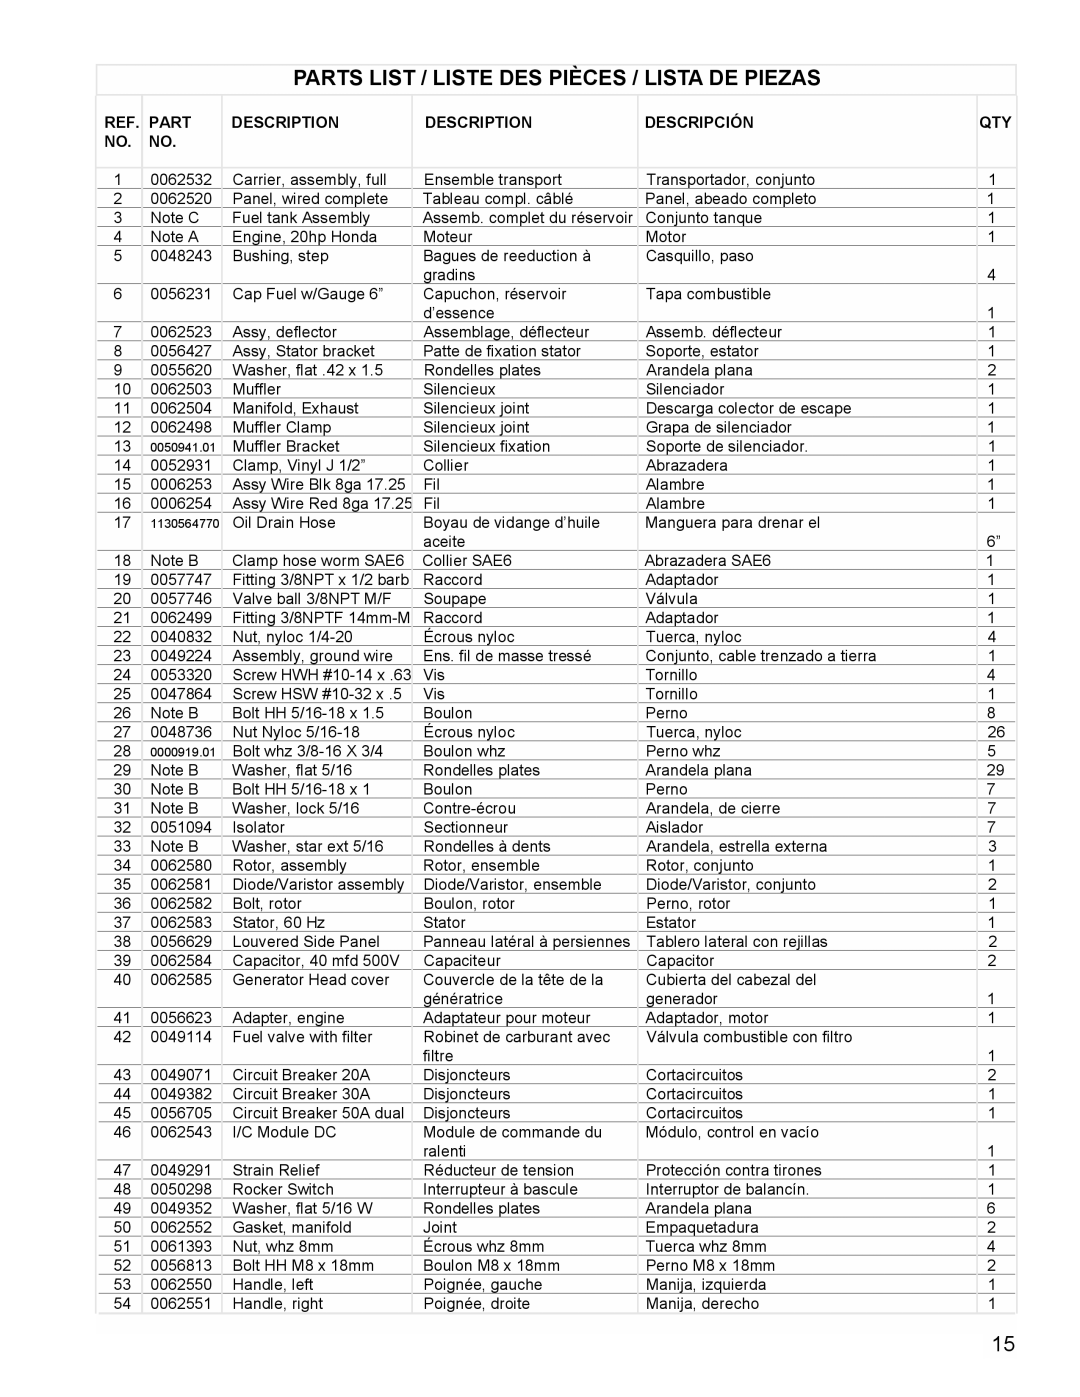 Coleman PM0601100 manual Parts List / Liste Des Pièces / Lista De Piezas, Assemb. complet du réservoir, Assy Wire Red 8ga 